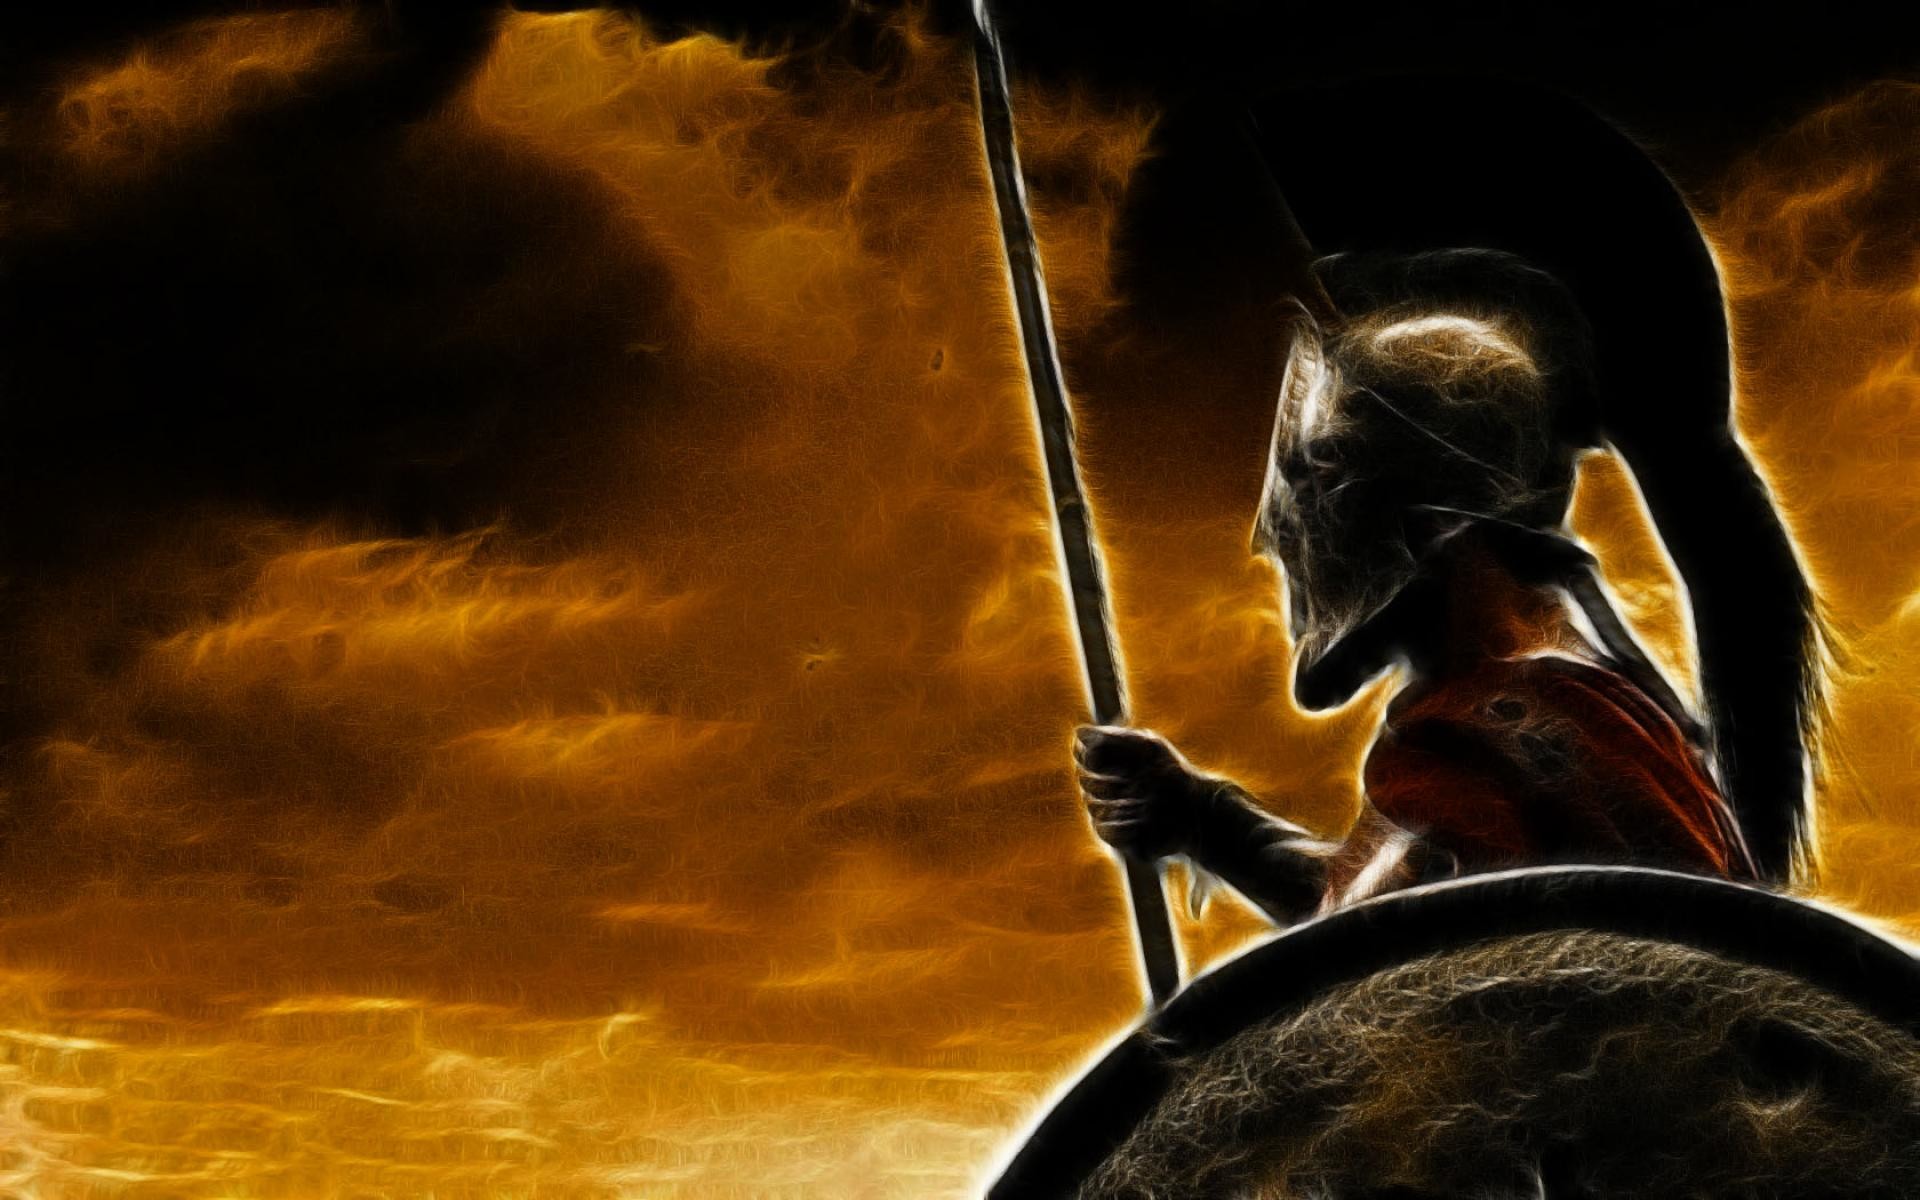 Spartan Warrior , HD Wallpaper & Backgrounds